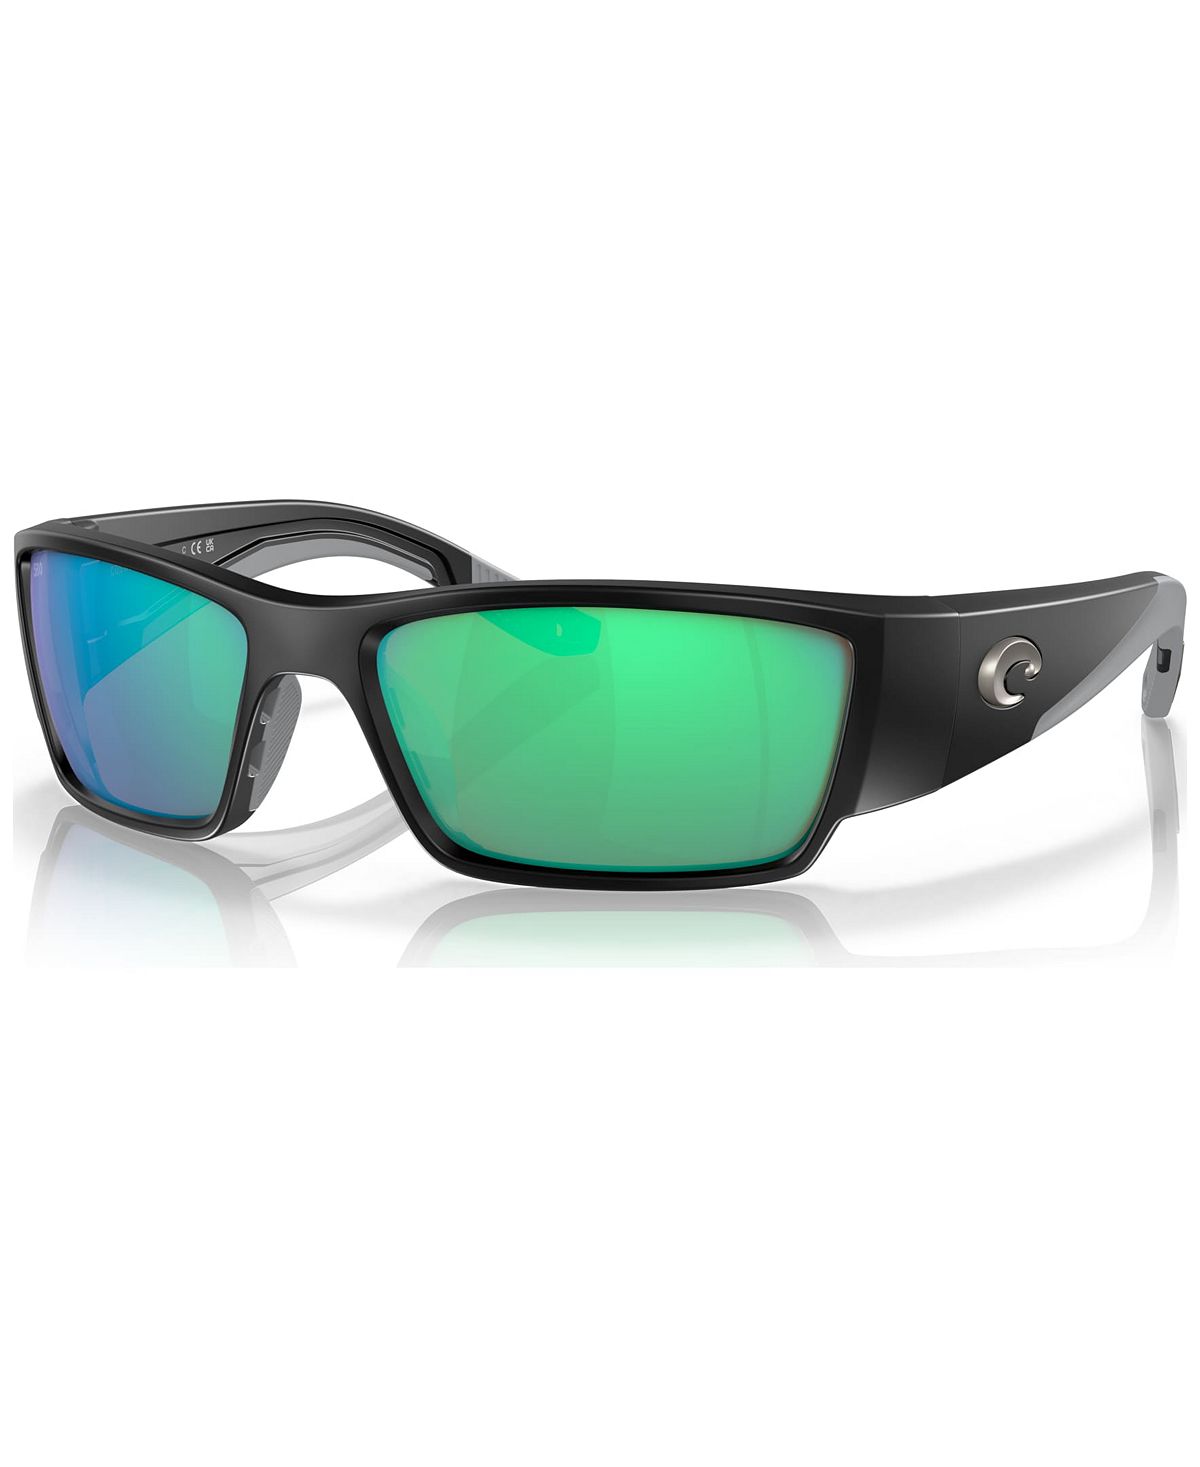 Мужские поляризованные солнцезащитные очки Corbina PRO Costa Del Mar цена и фото